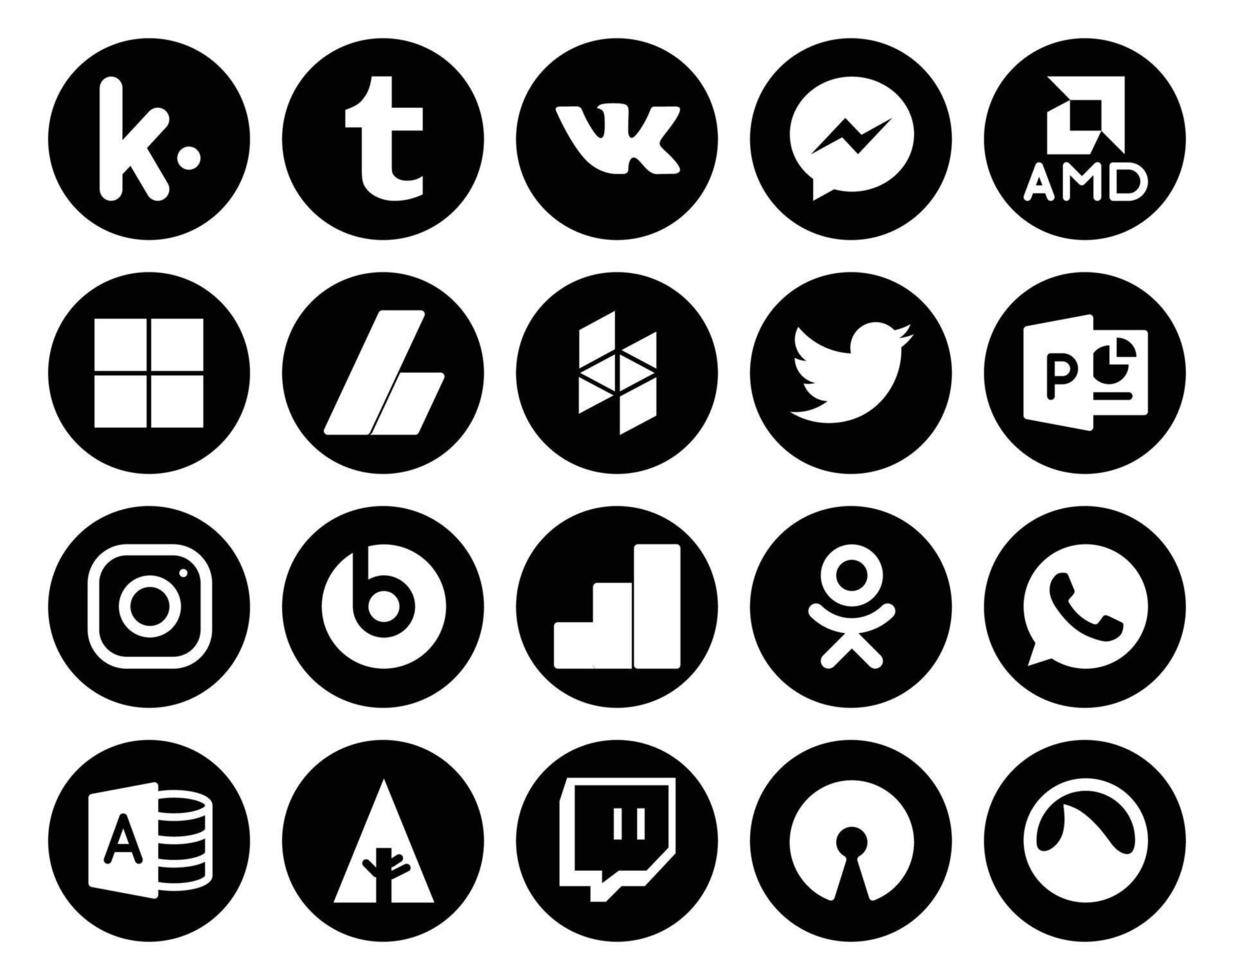 20 Symbolpakete für soziale Medien, einschließlich Microsoft Access, Odnoklassniki, Houzz, Google Analytics, Instagram vektor